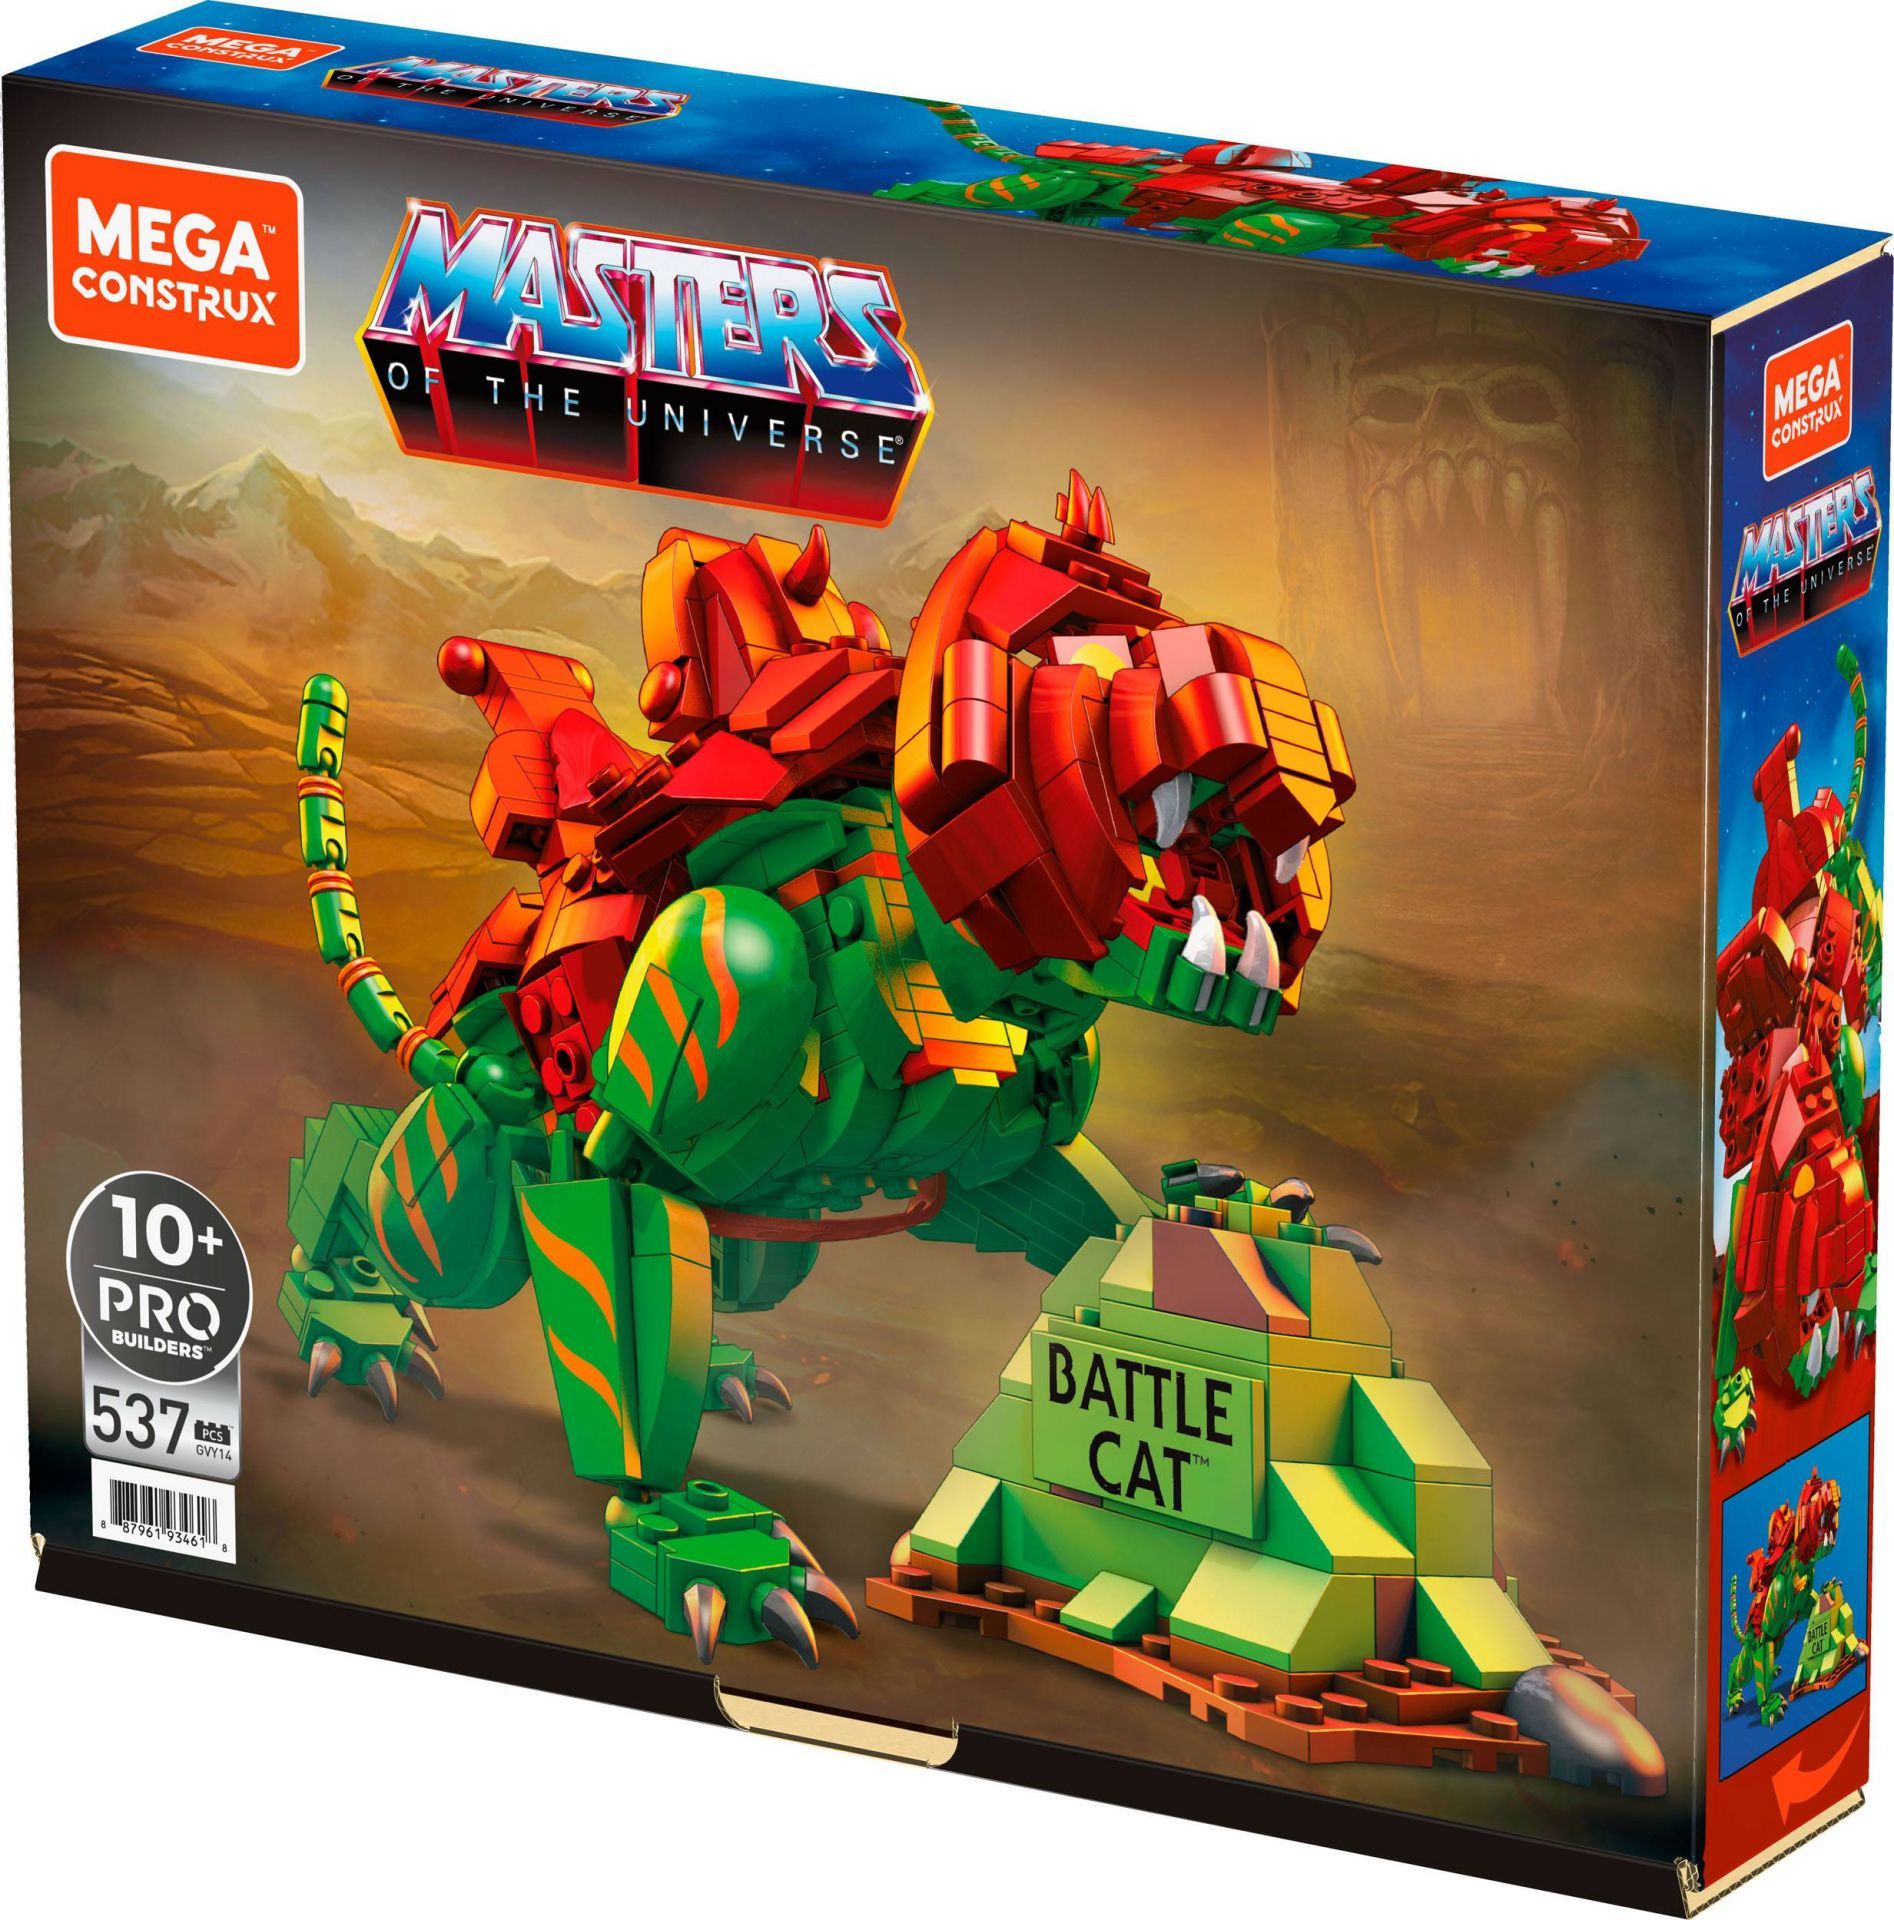 Set de constructie Mega Construx, Mattel, Masters of the Universe: Battle Cat, 8 ani+, 537 piese, Multicolor